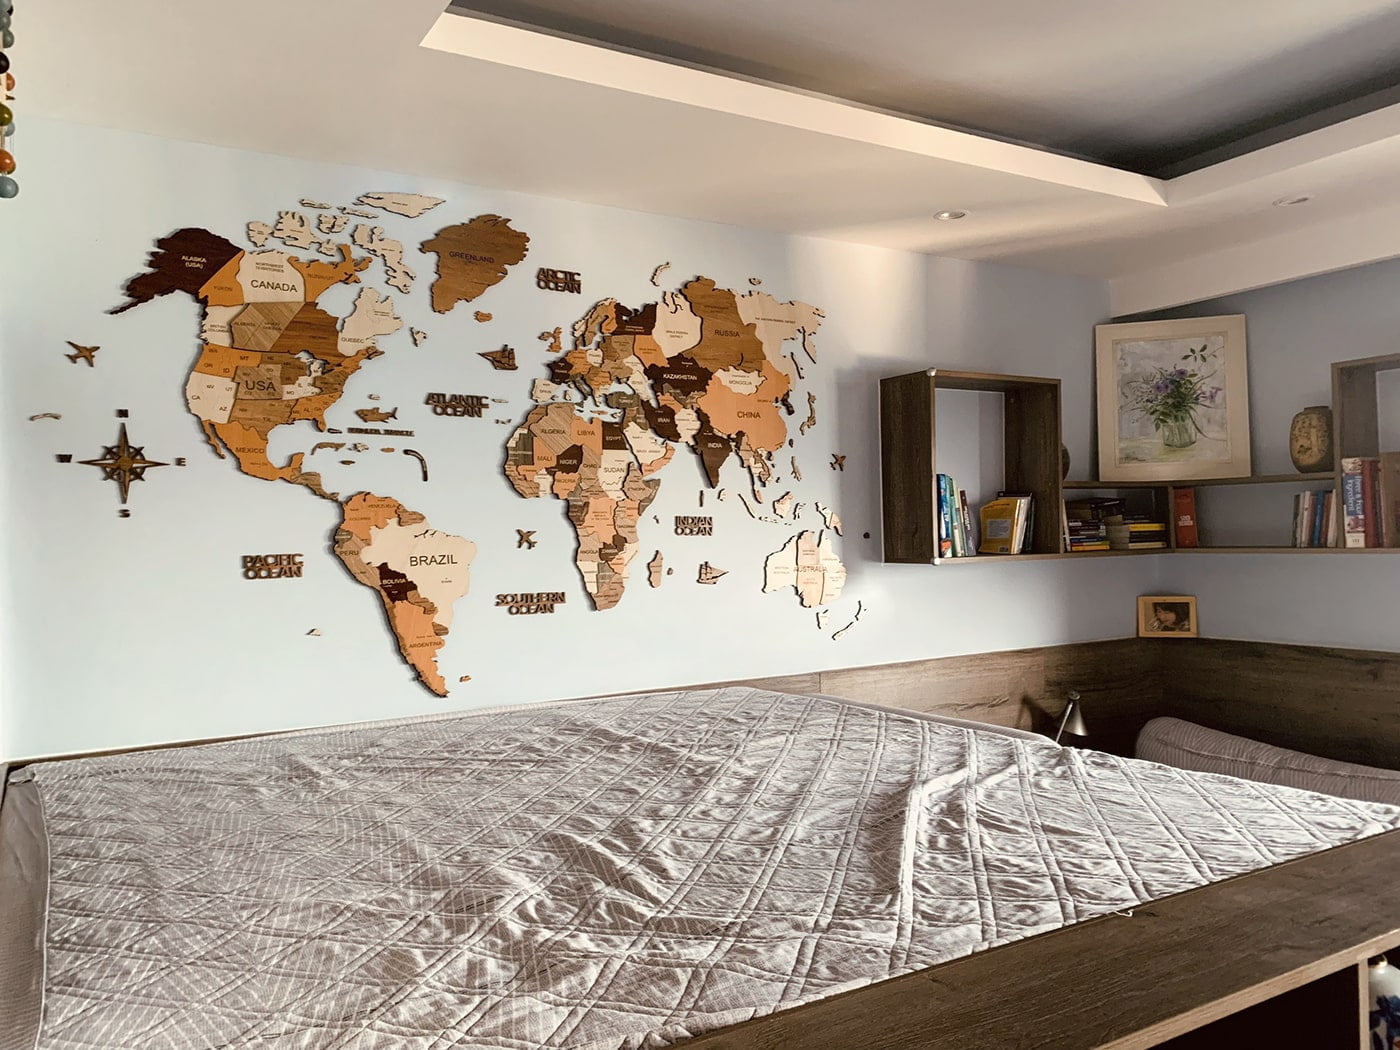 Tranh bản đồ gỗ 3d treo tại phòng ngủ